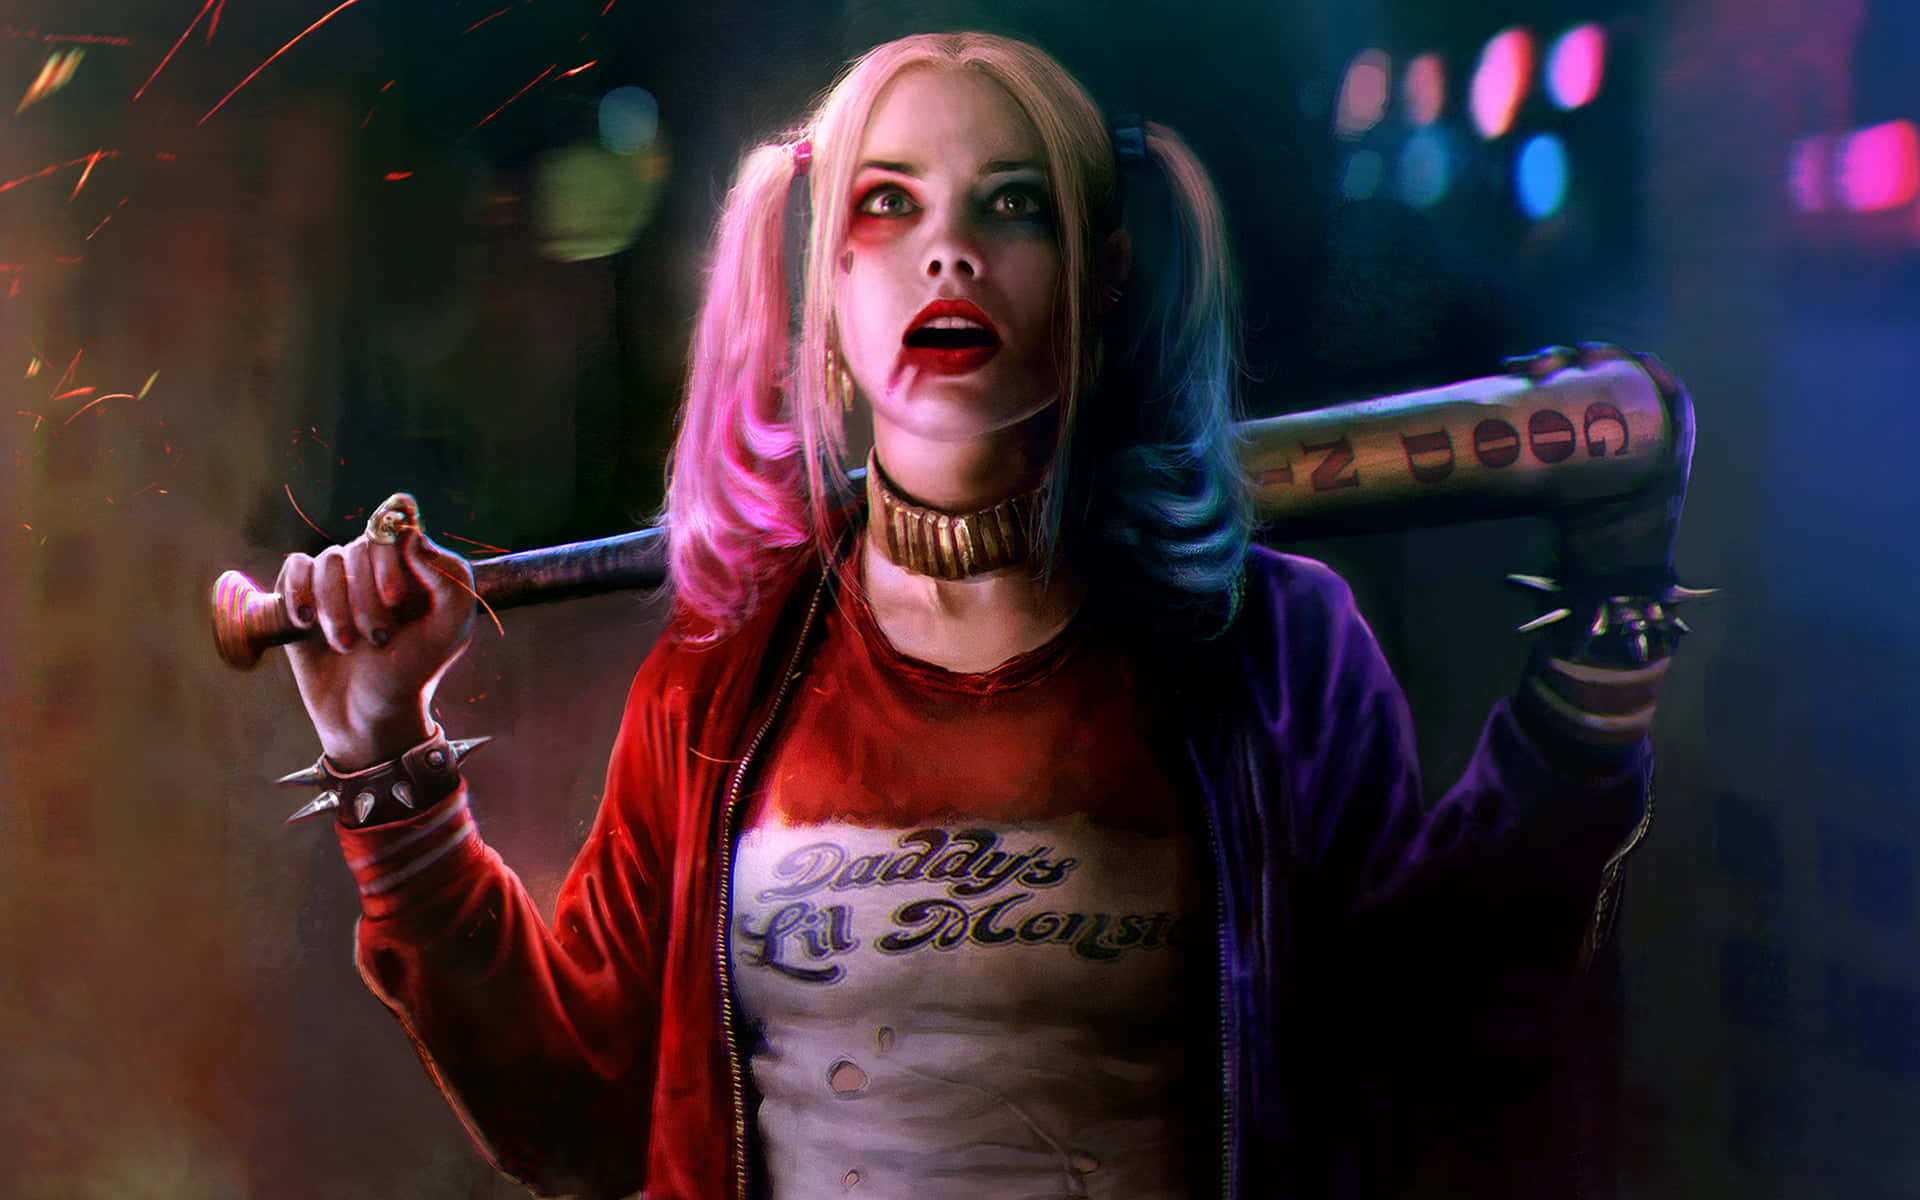 Harley Quinn billeder forudinstalleret til underholdning.